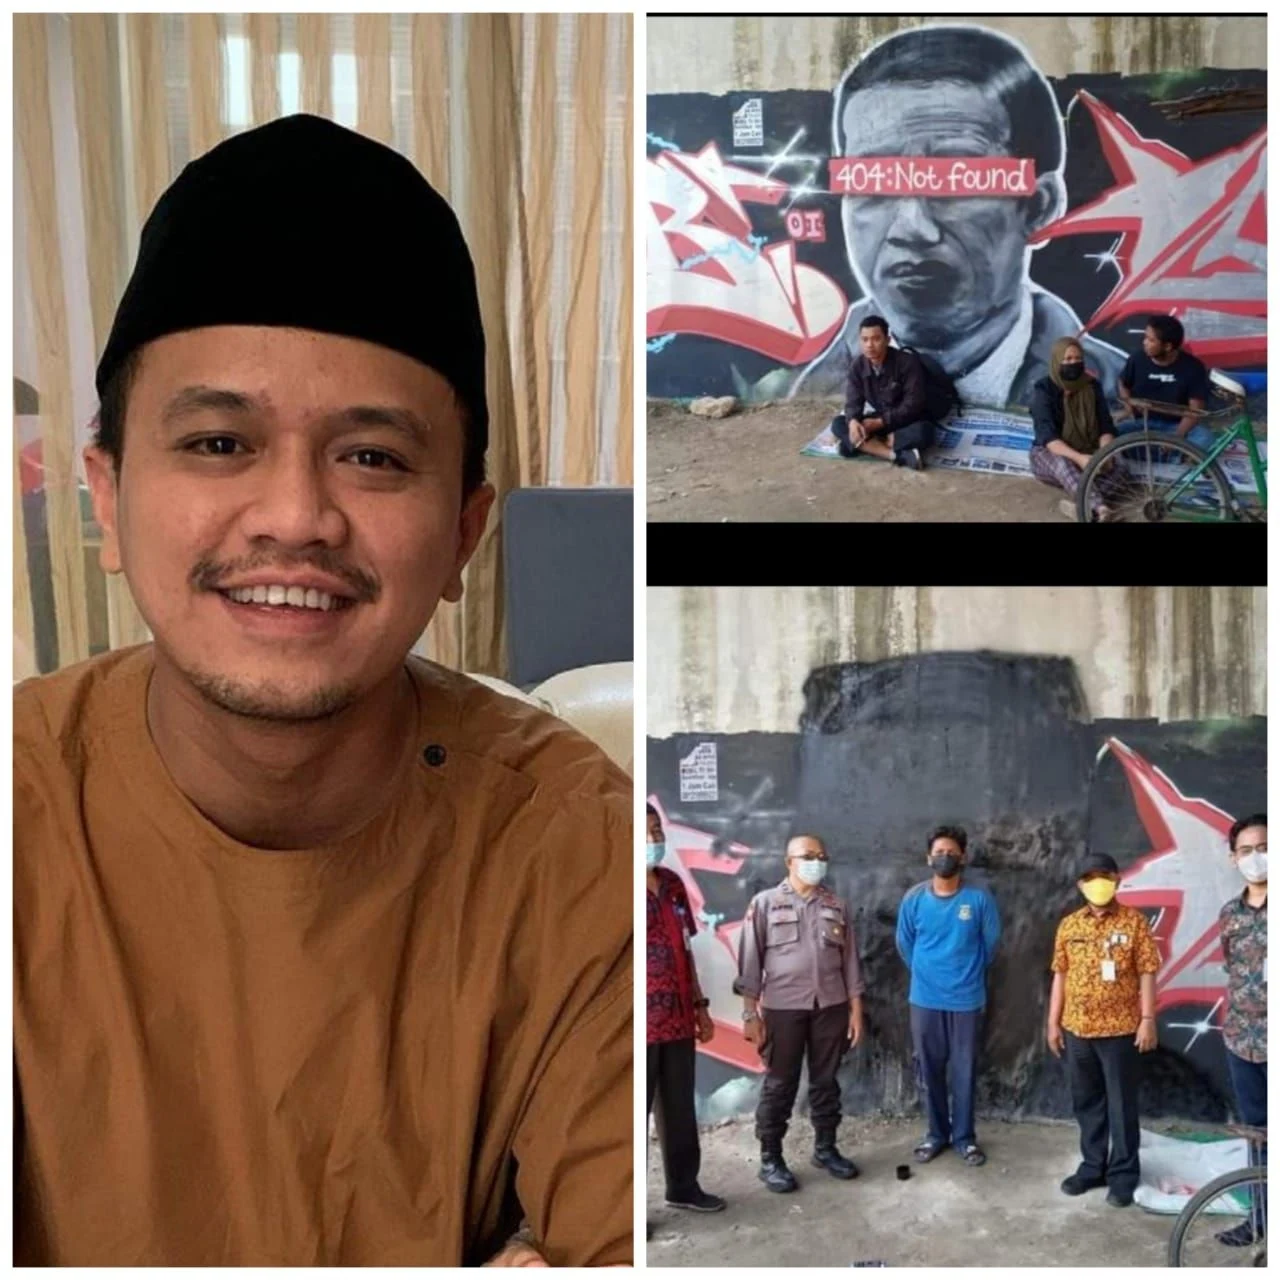 Faldo Sebut Mural Jokowi '404 Not Found' Tindakan Melawan Hukum, Profesor Singapura: Otoriter Era Jokowi Semakin Jelas!